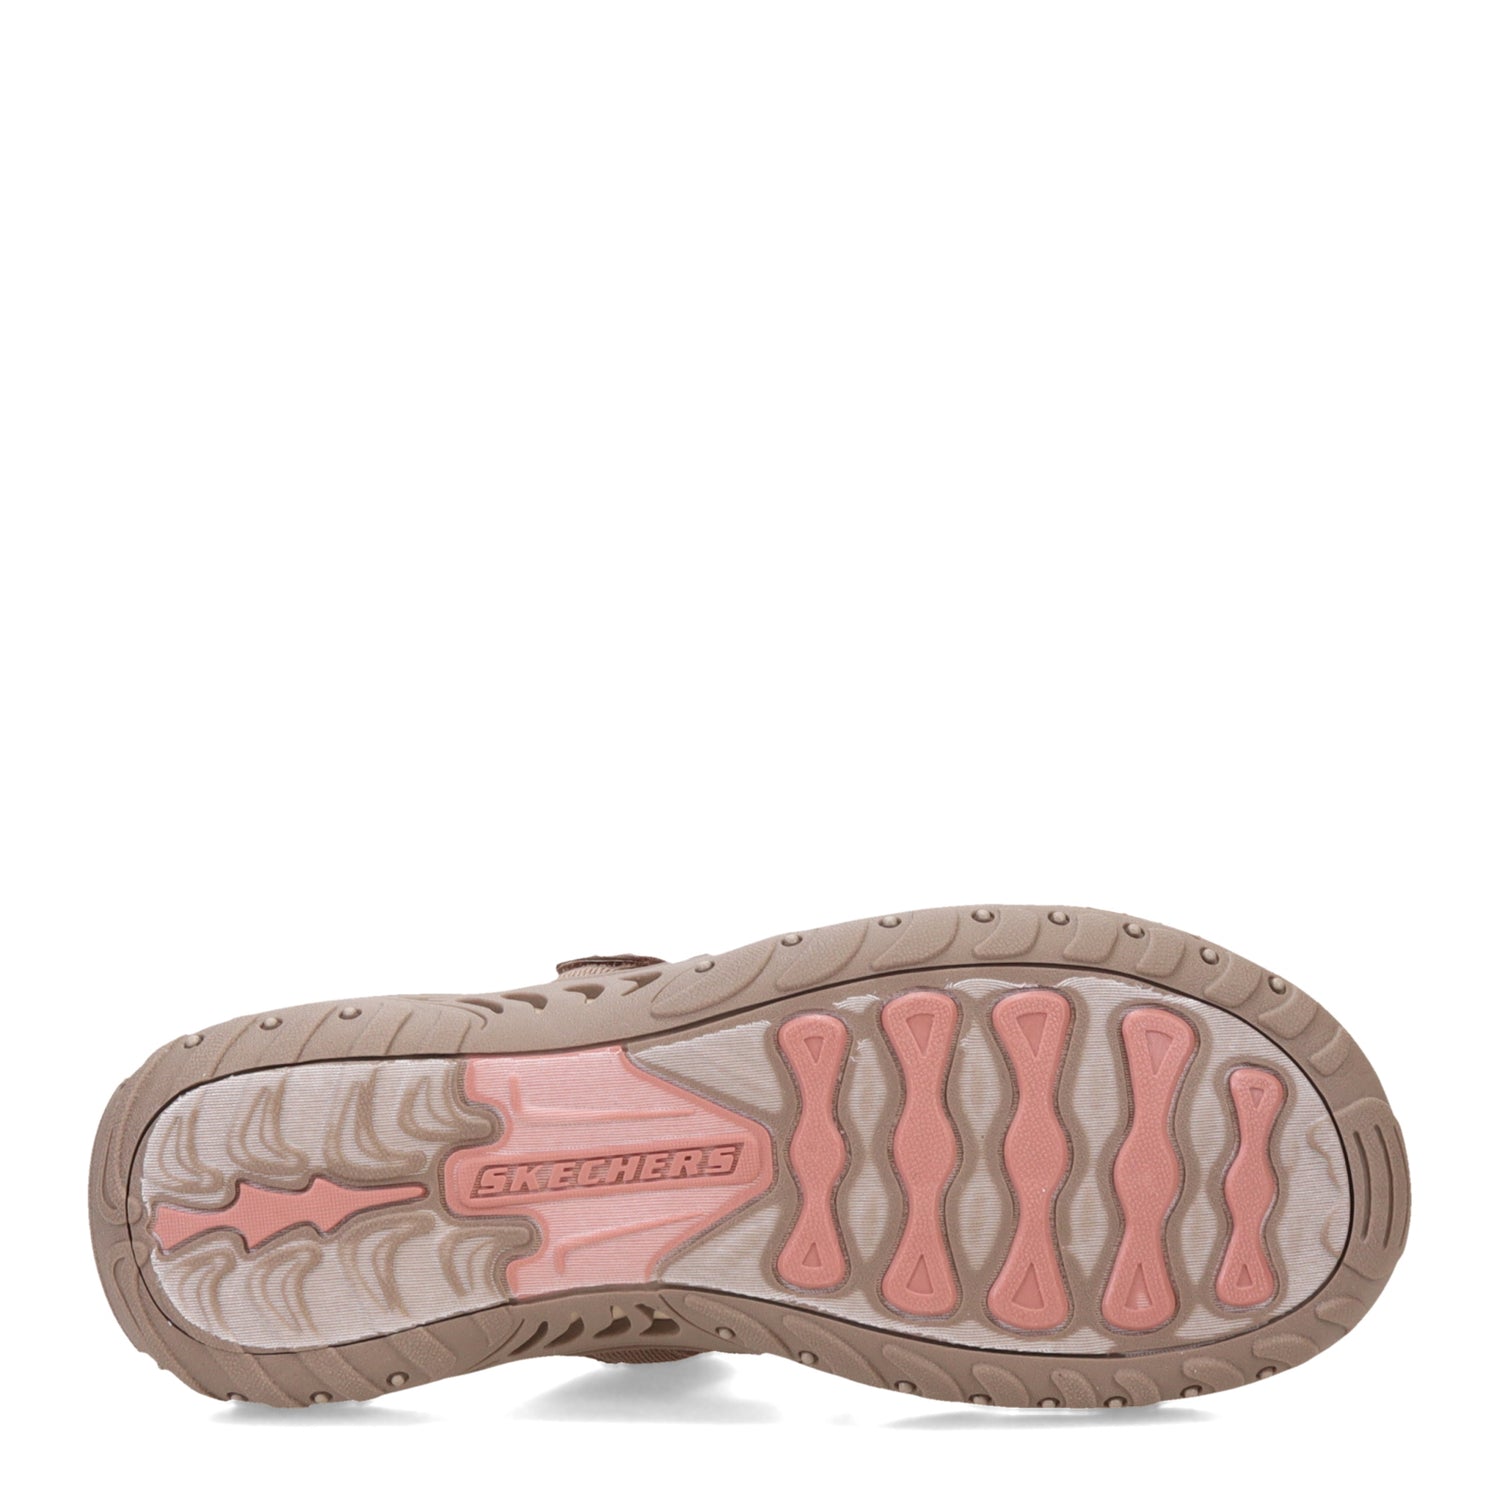 Peltz Shoes  Women's Skechers Reggae - Baja Sunrise Sandal Taupe Multi 163481-TPMT